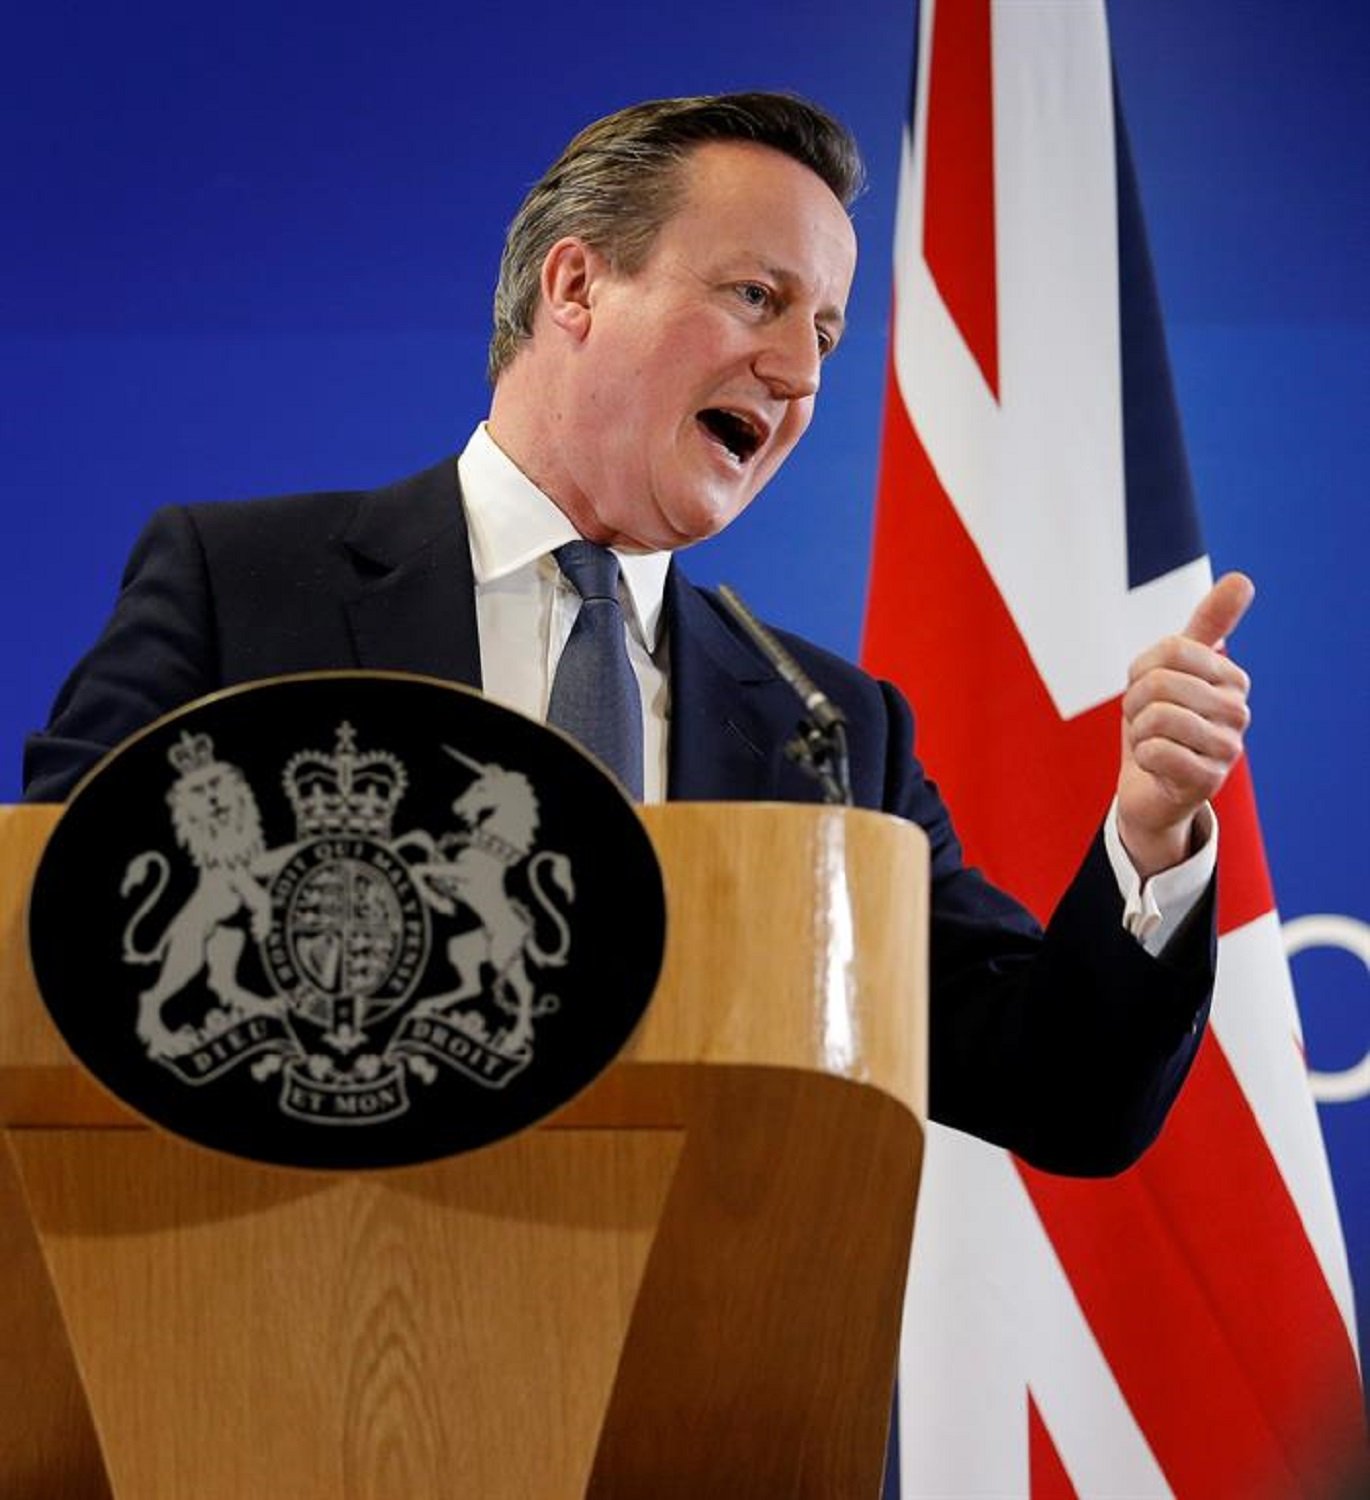 Cameron va demanar a Elisabet II que intercedís contra la independència d'Escòcia